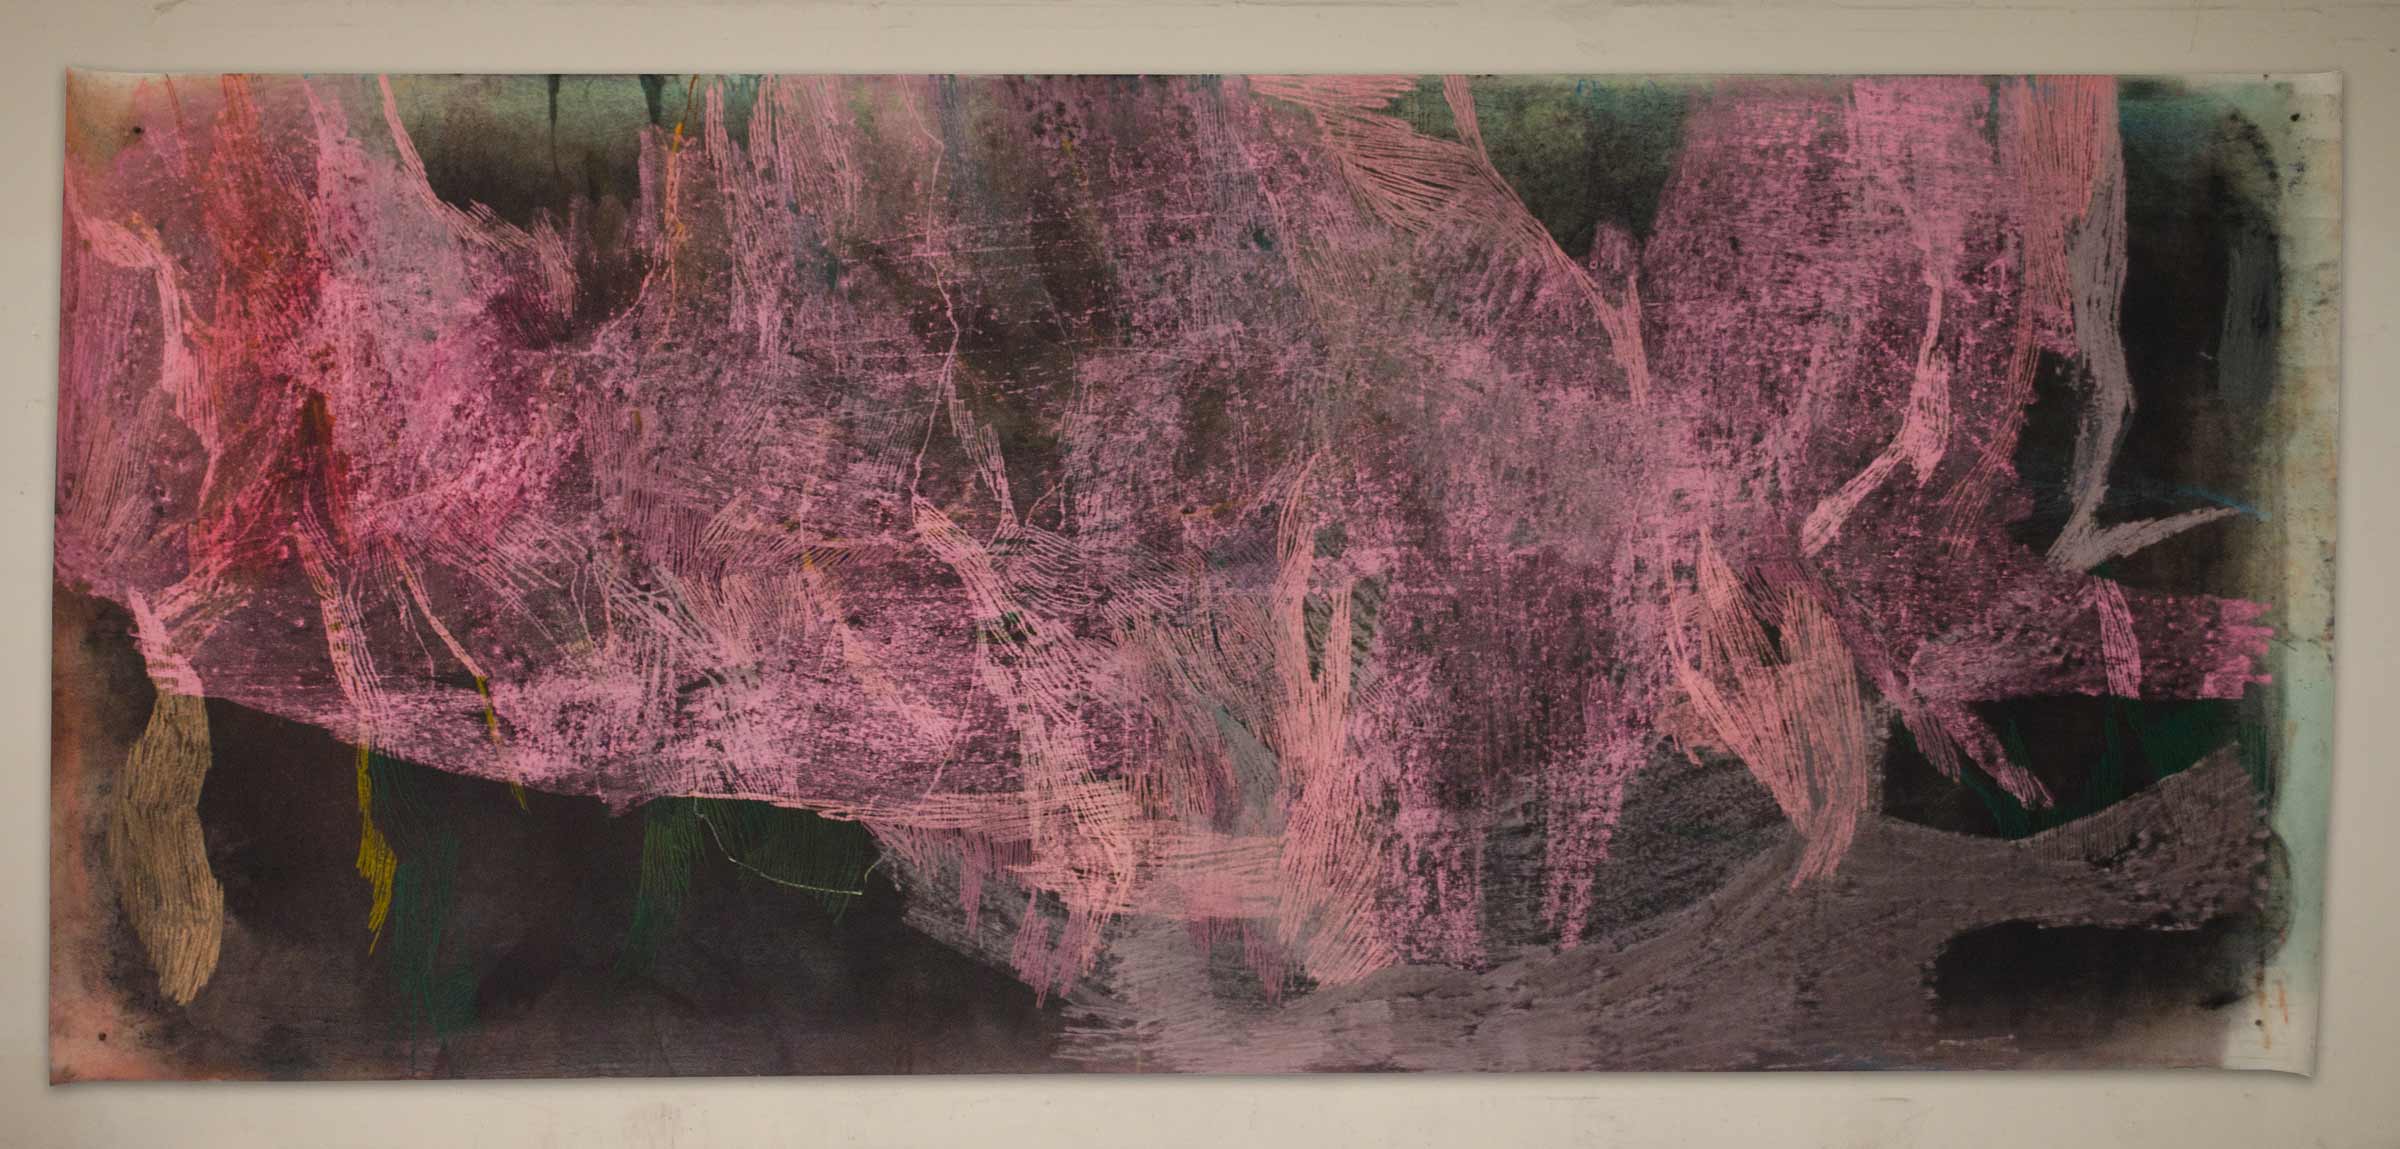 Gespinst, 2013, 150 x 430 cm, Kreide und Pigment auf Papier